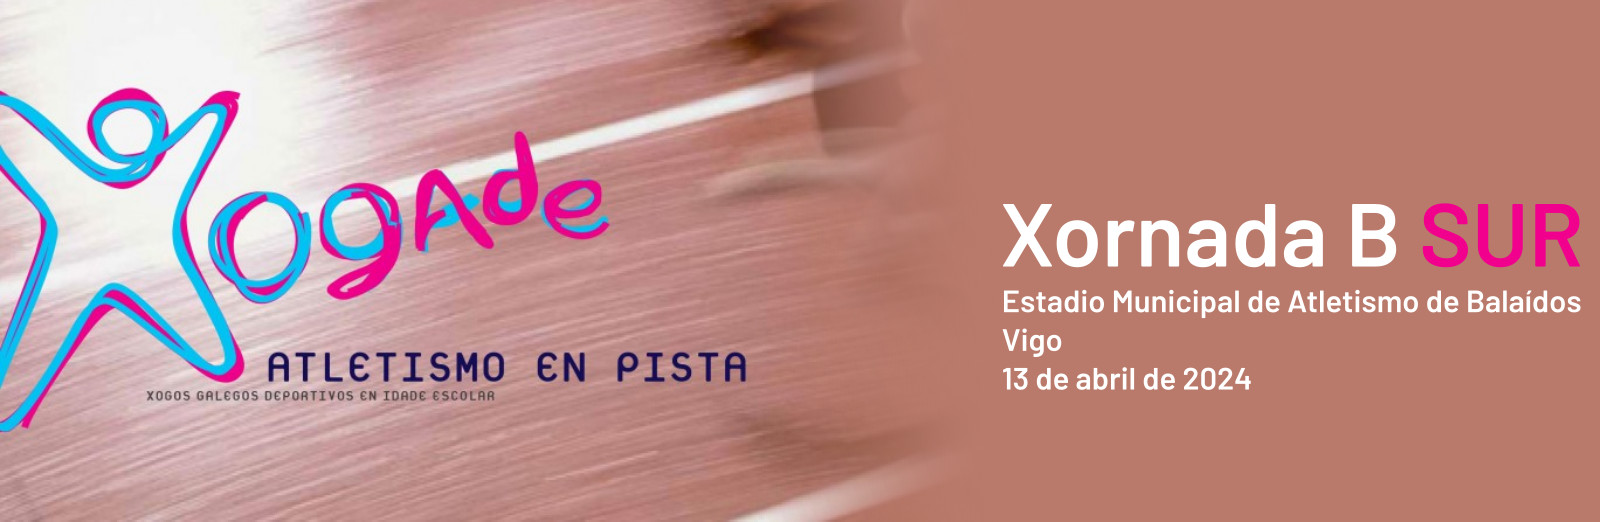  XOGADE Vigo: IV Xornada Altetismo en pista - Programa B.  Estodio Municipal de Atletismo de Balaídos, 13 abril 2024